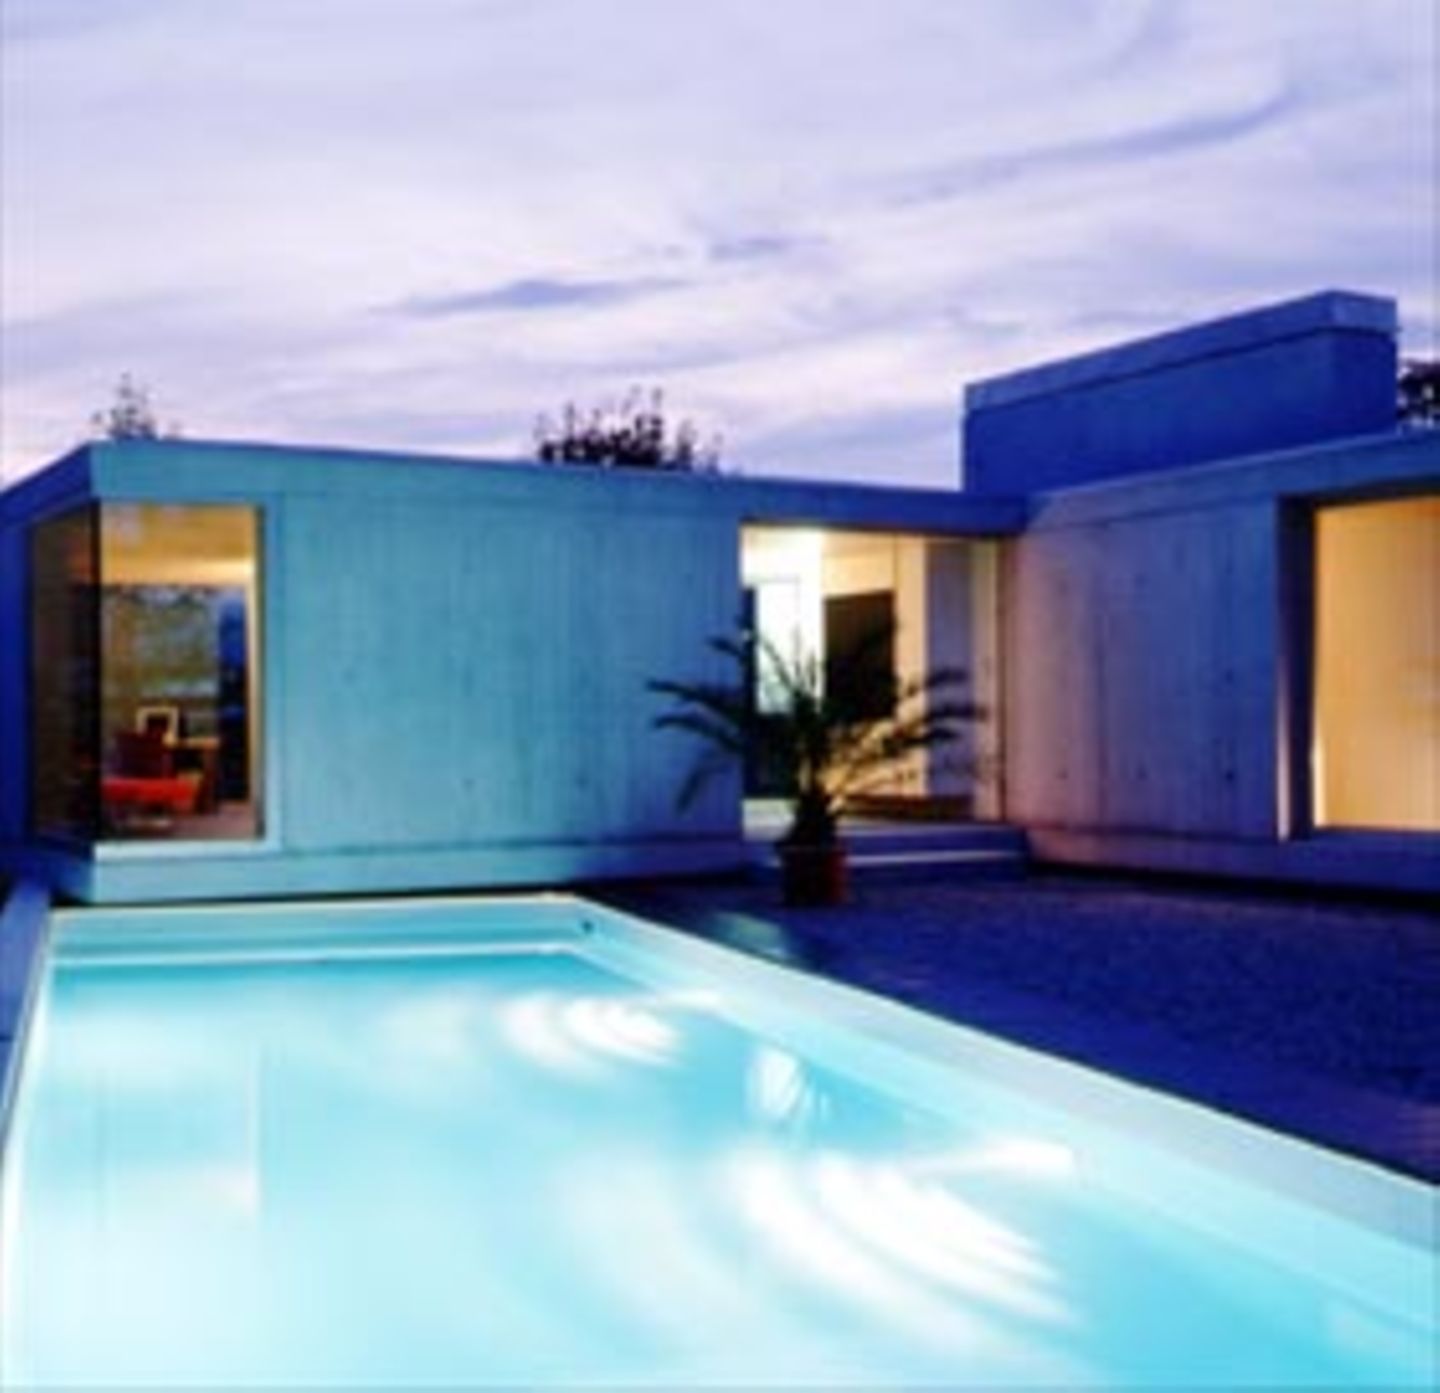 Haus Sperger in Lustenau ist ein kraftvoller Akkord aus hellem Beton und klarem Glas.